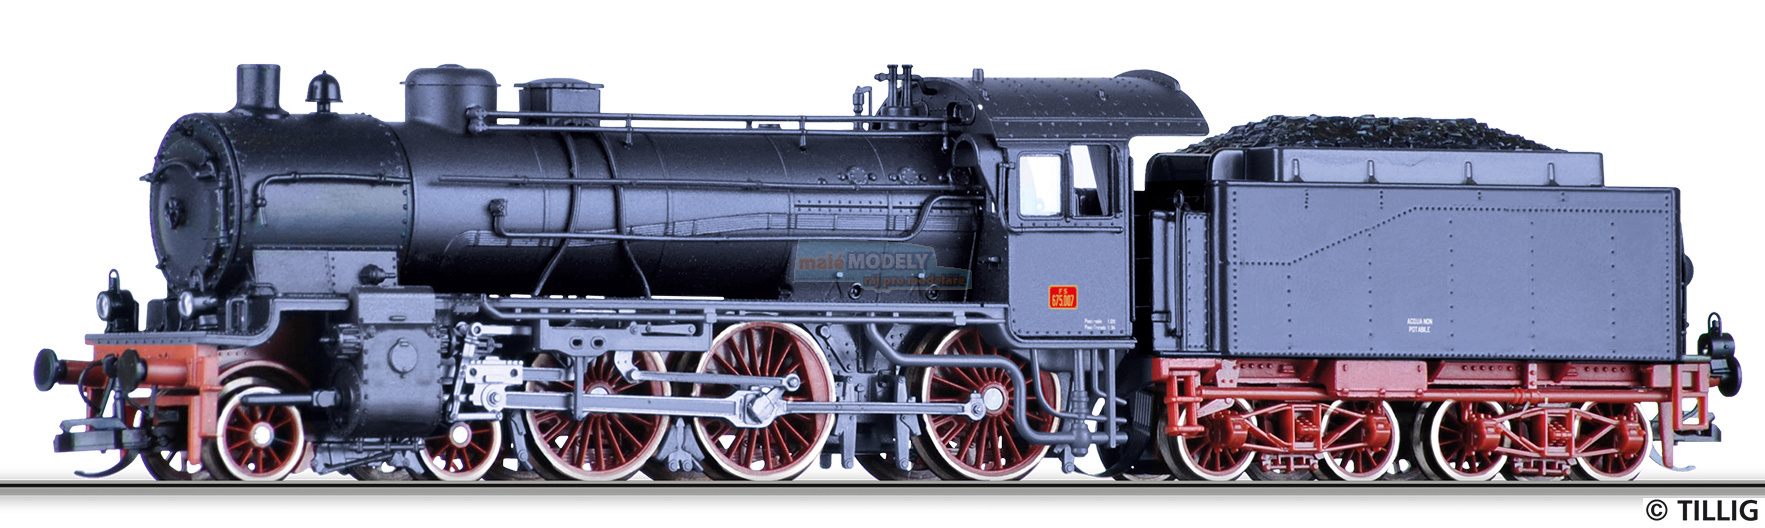 Parní lokomotiva řady 675 - (31.03.2021)